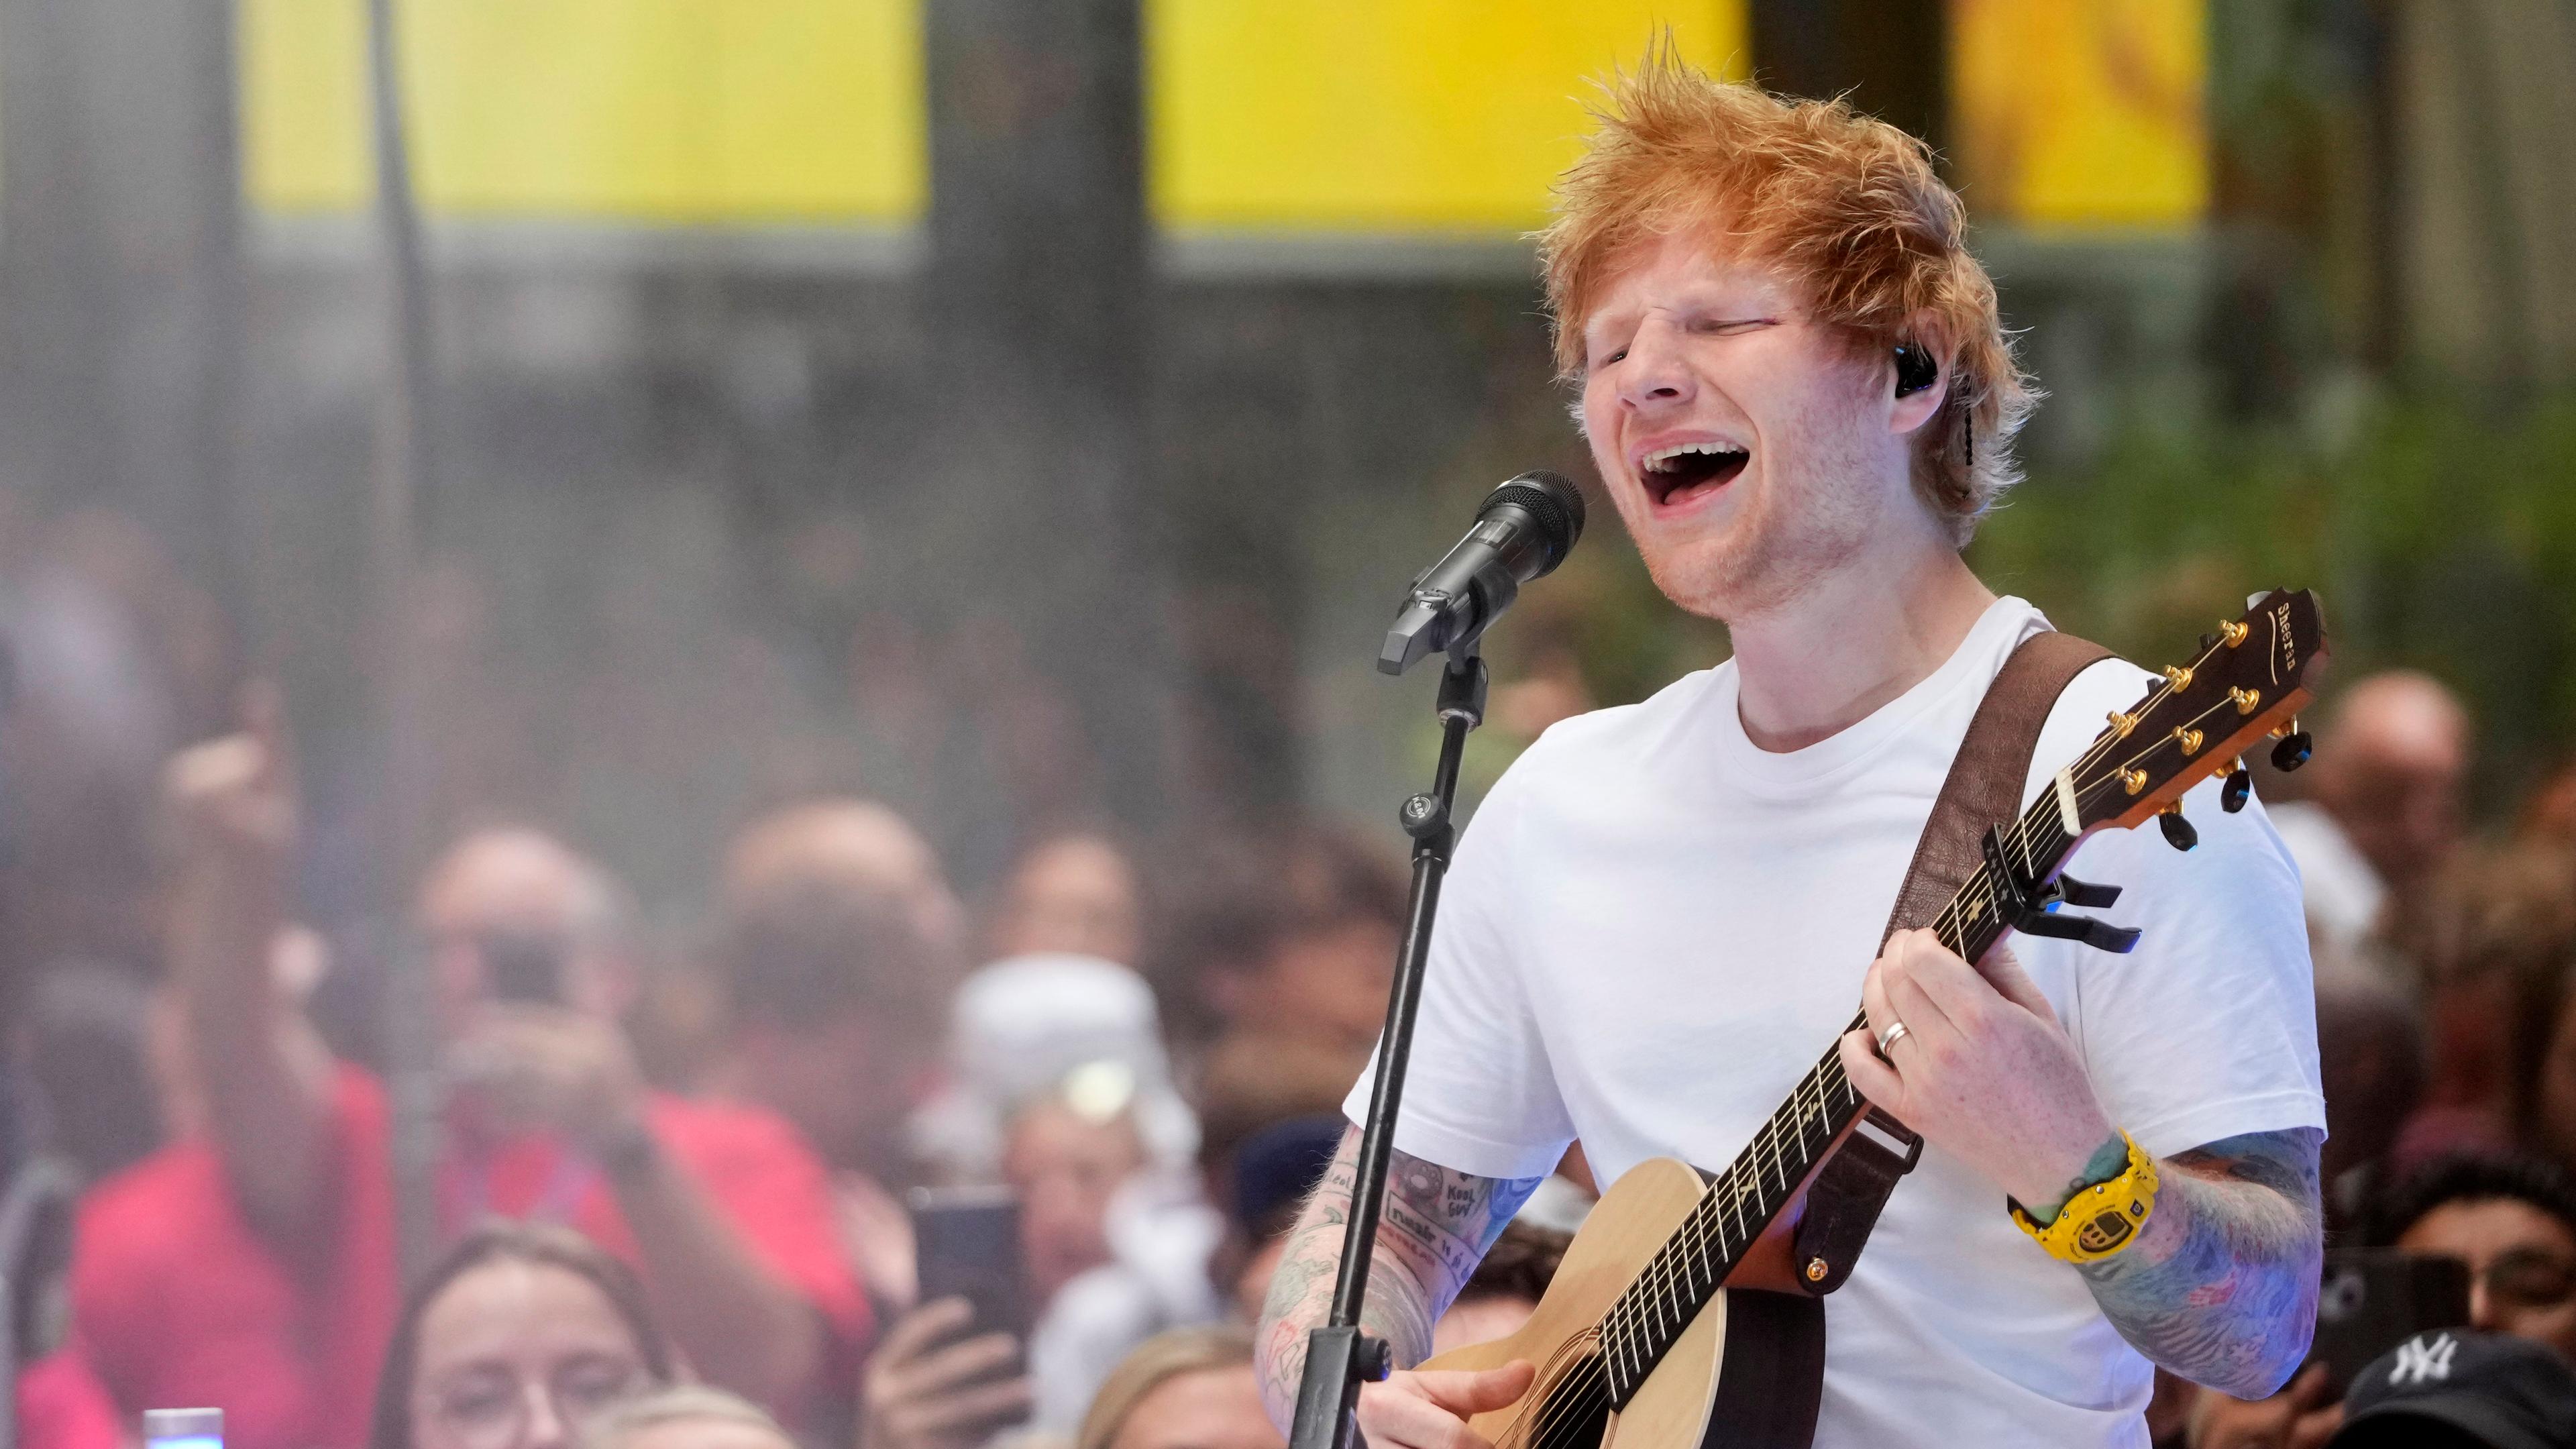 Sänger Ed Sheeran mit Gitarre singt auf einer Bühne